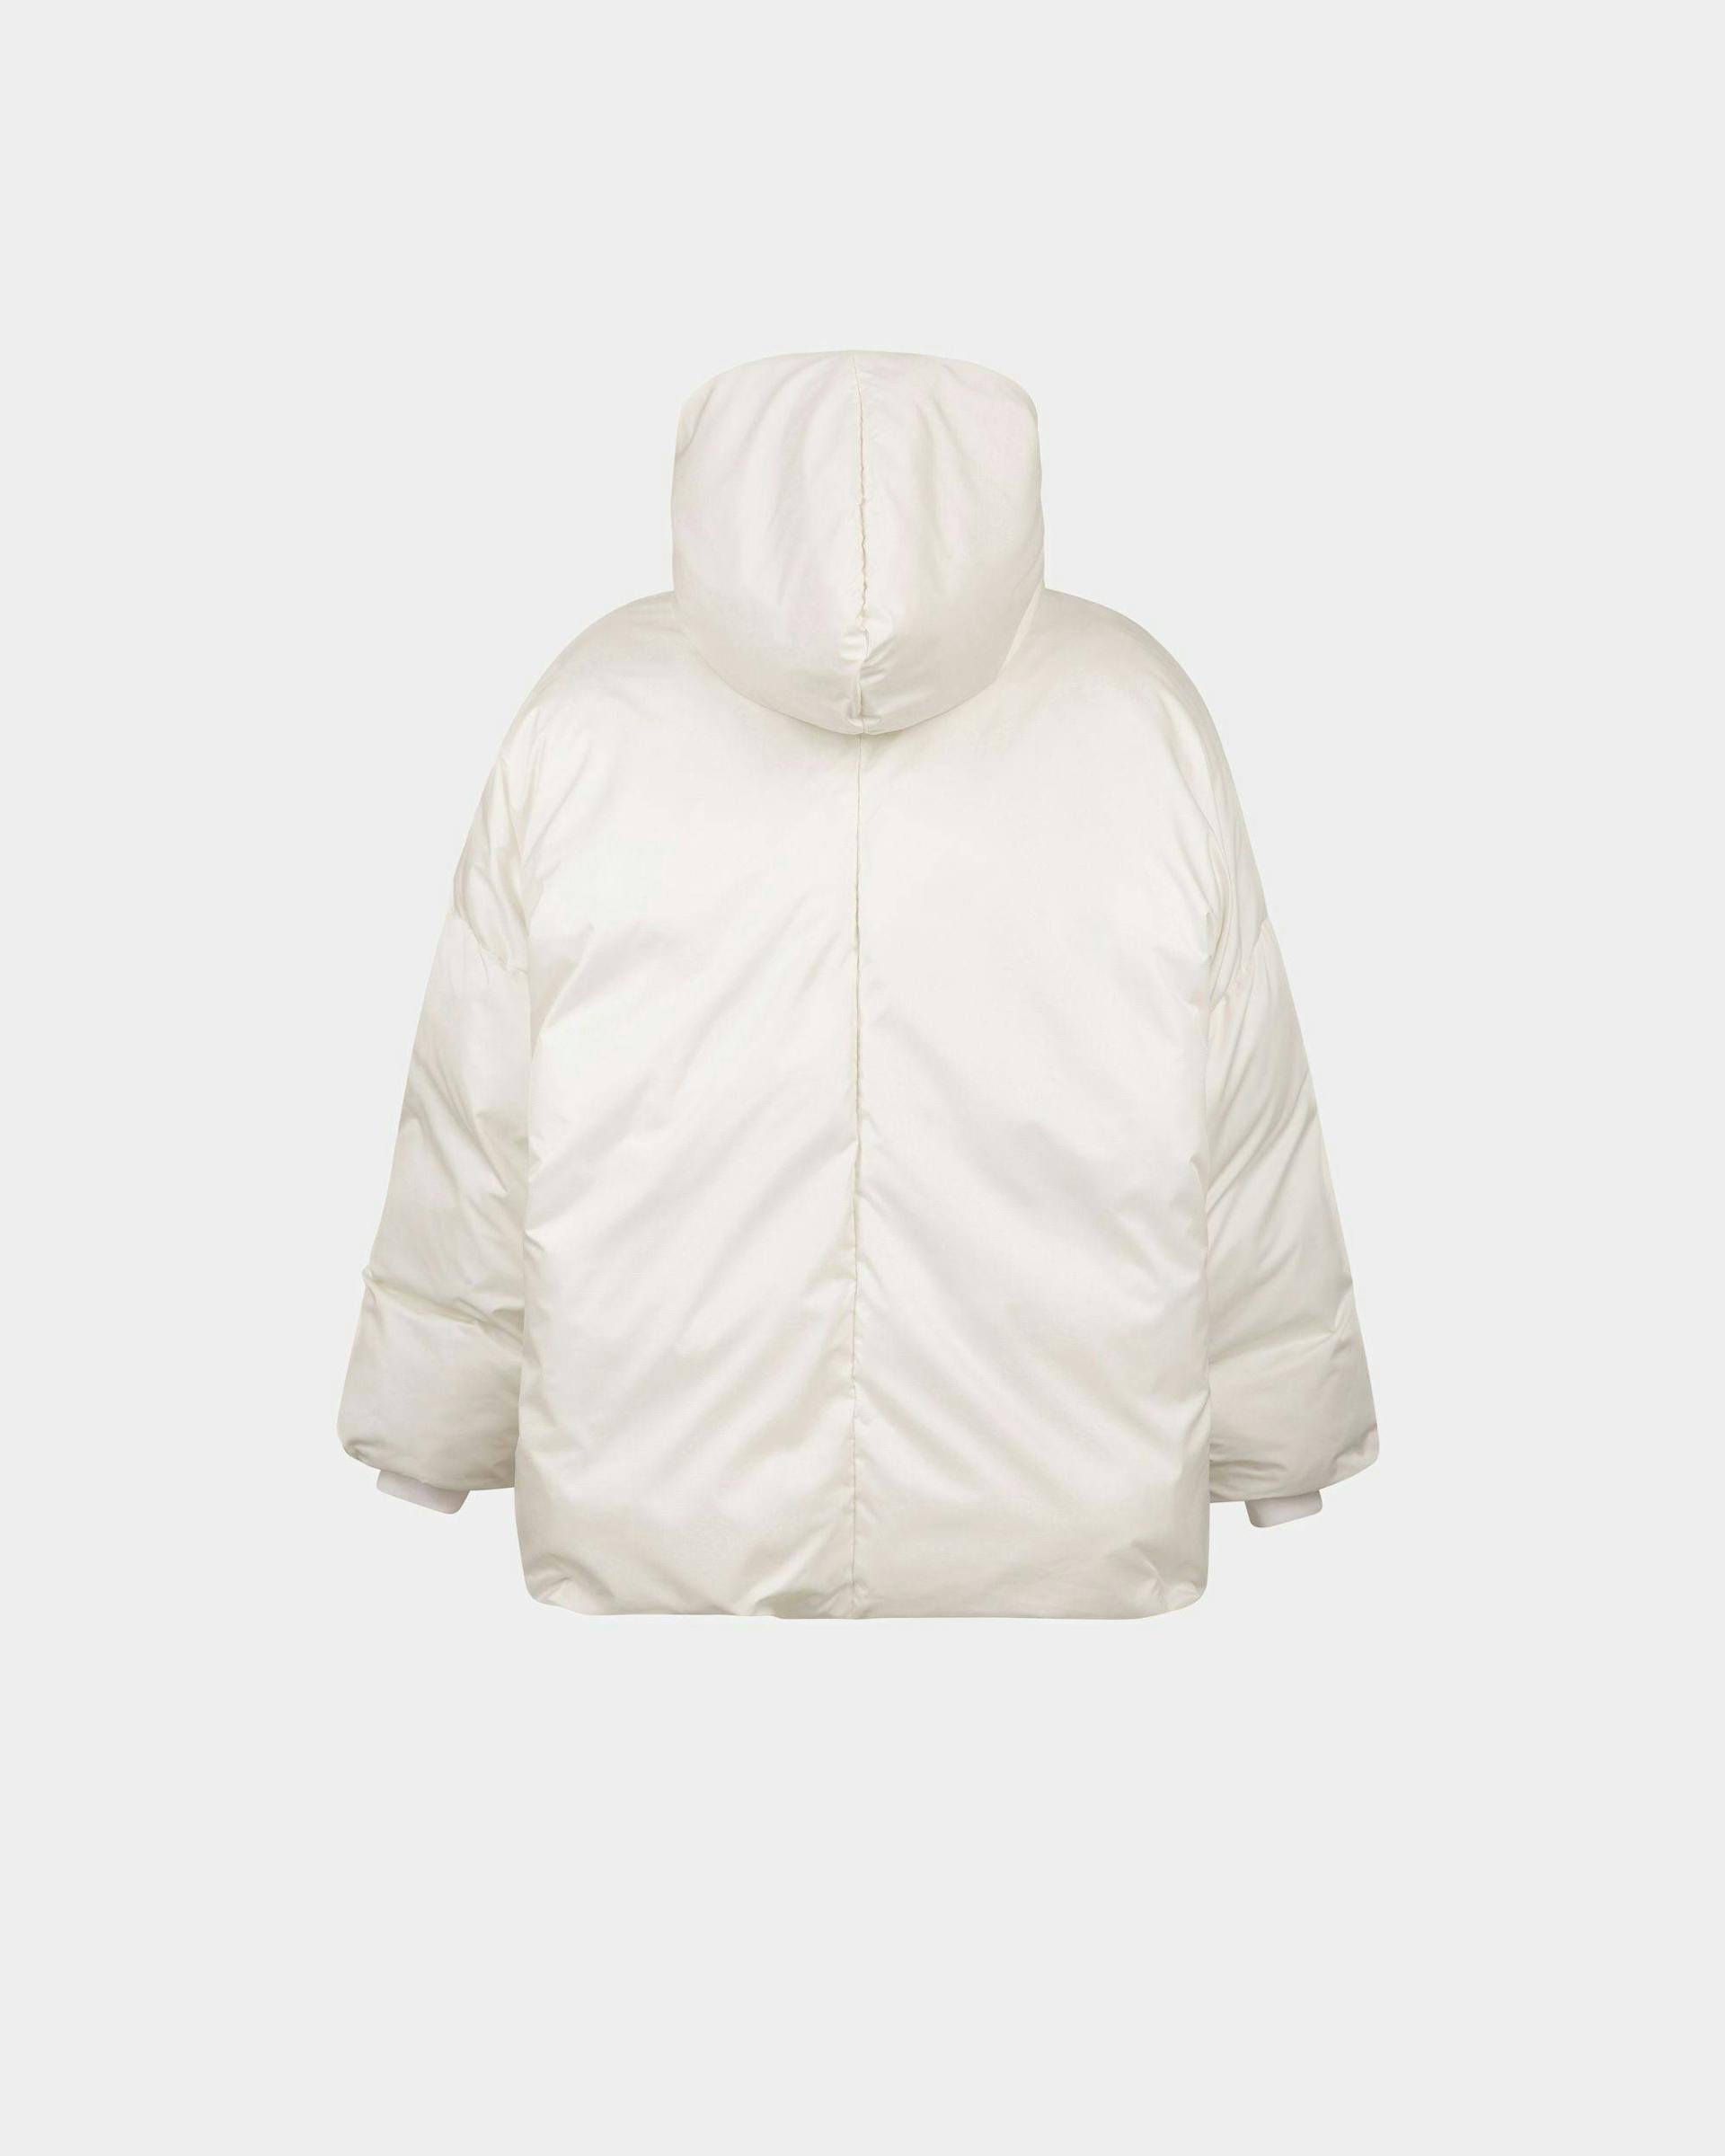 Women's Puffer Jacket In White Nylon | Bally | Still Life Back